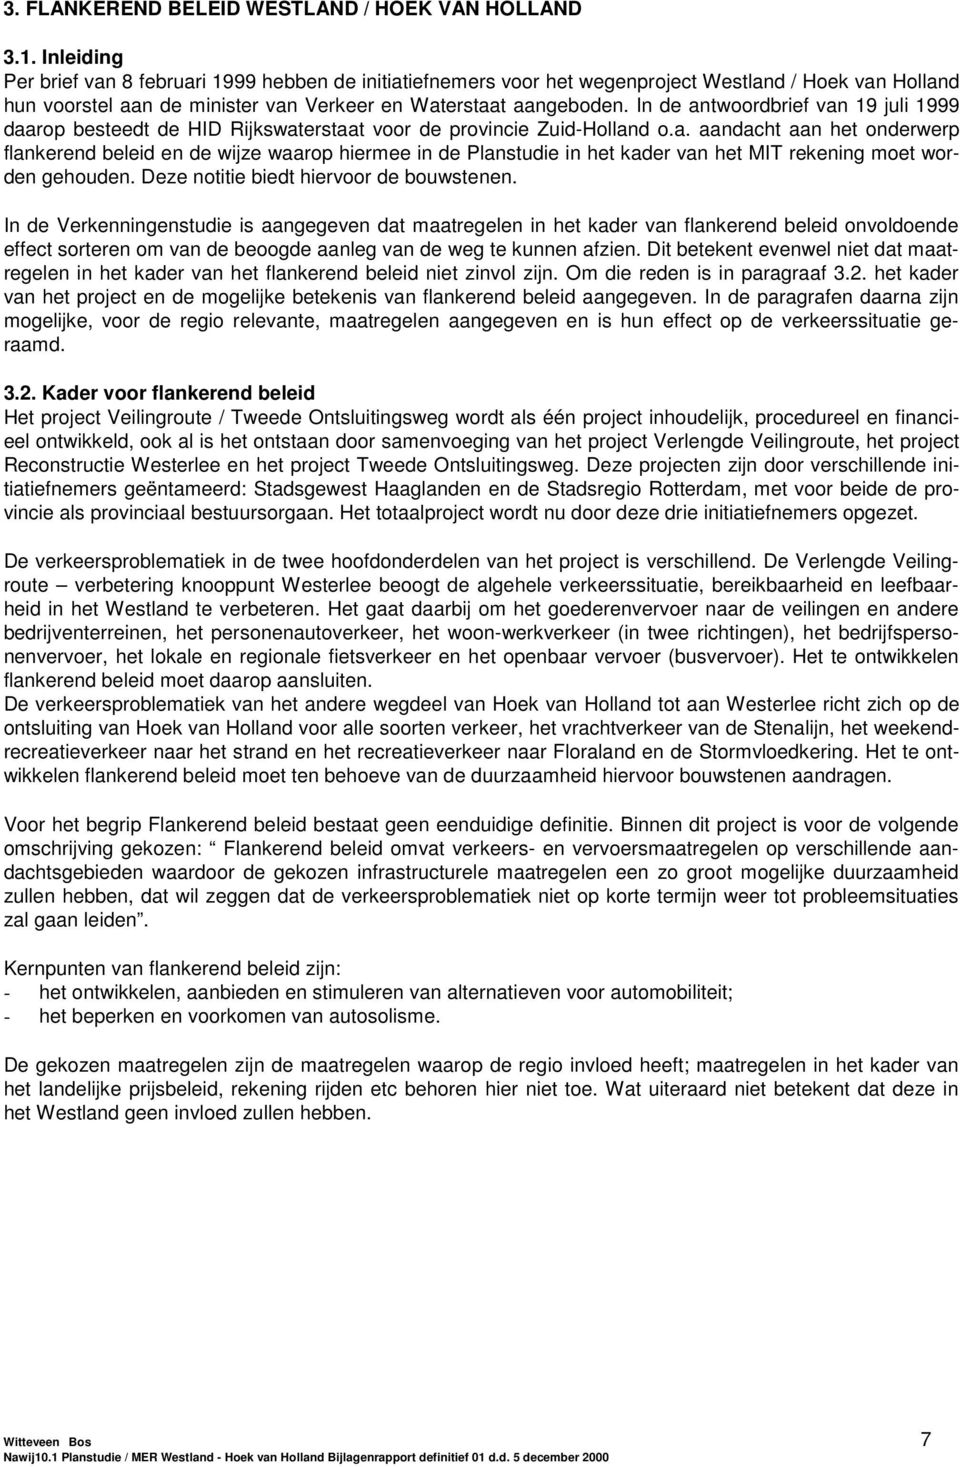 In de antwoordbrief van 19 juli 1999 daarop besteedt de HID Rijkswaterstaat voor de provincie Zuid-Holland o.a. aandacht aan het onderwerp flankerend beleid en de wijze waarop hiermee in de Planstudie in het kader van het MIT rekening moet worden gehouden.